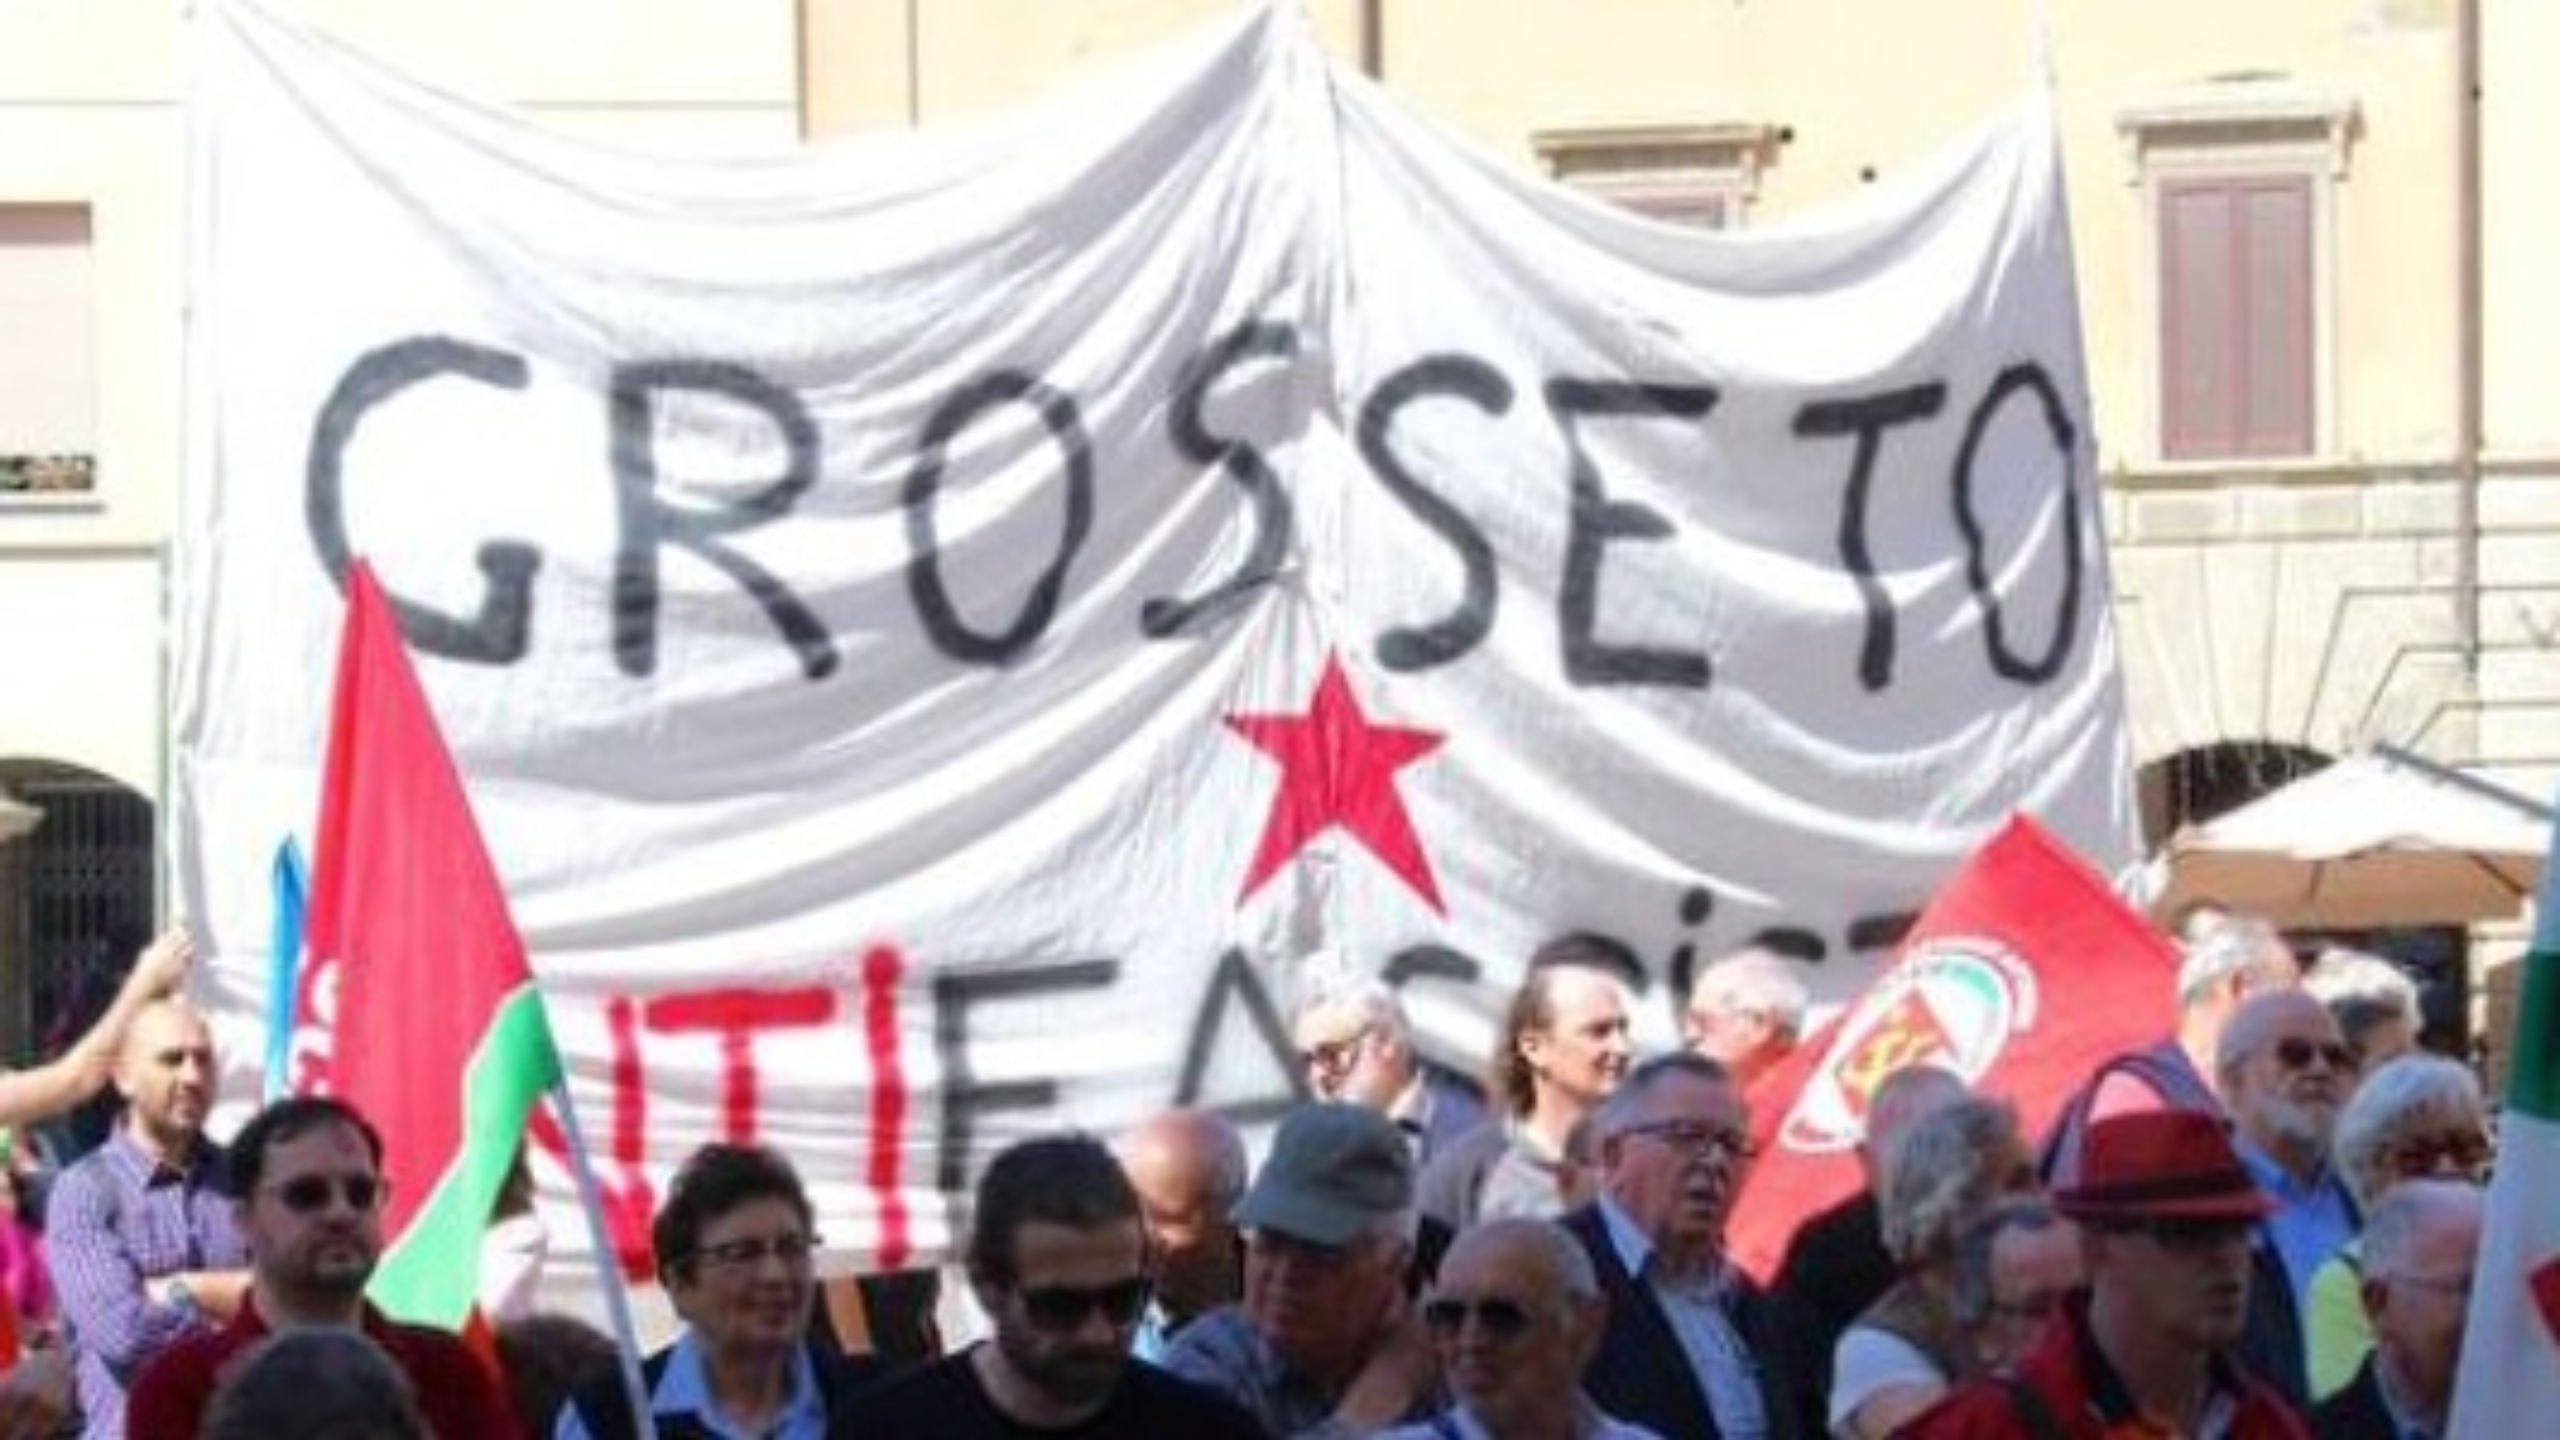 Cantata ‘Bella ciao’ durante la cerimonia a Grosseto, per protesta alla decisione di intitolare una via a Giorgio Almirante